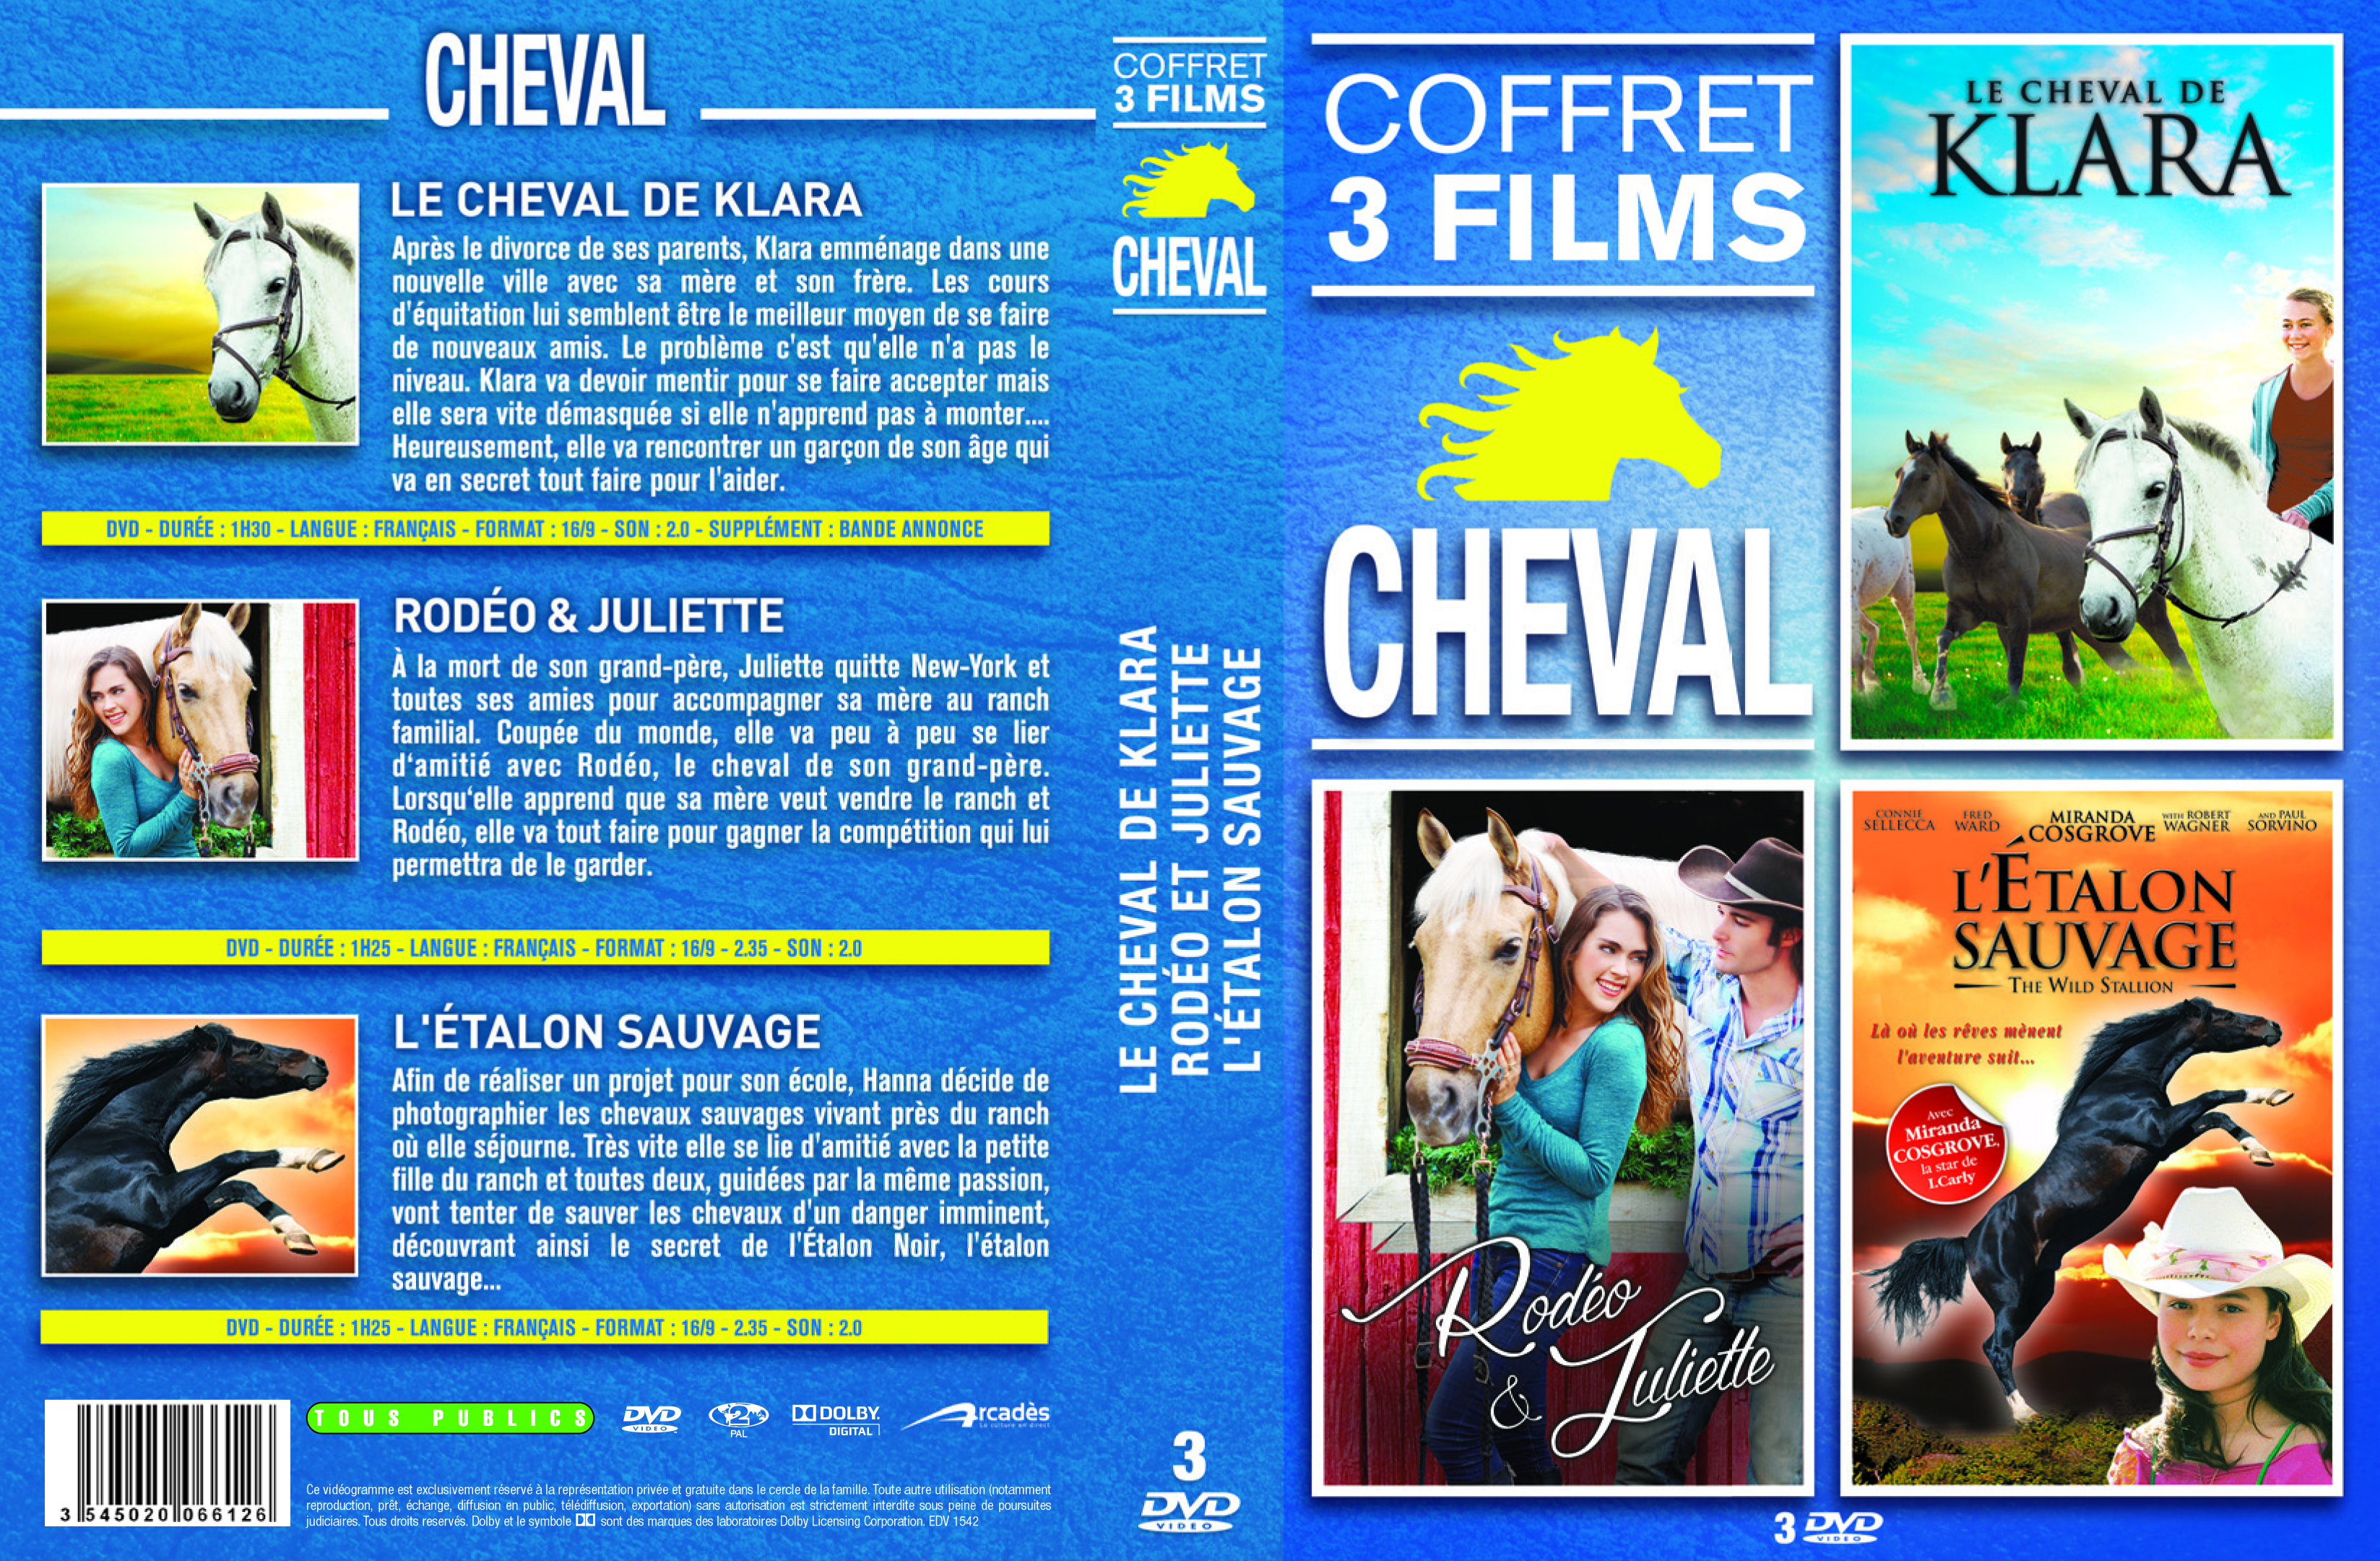 Jaquette DVD Cheval vol 2 COFFRET